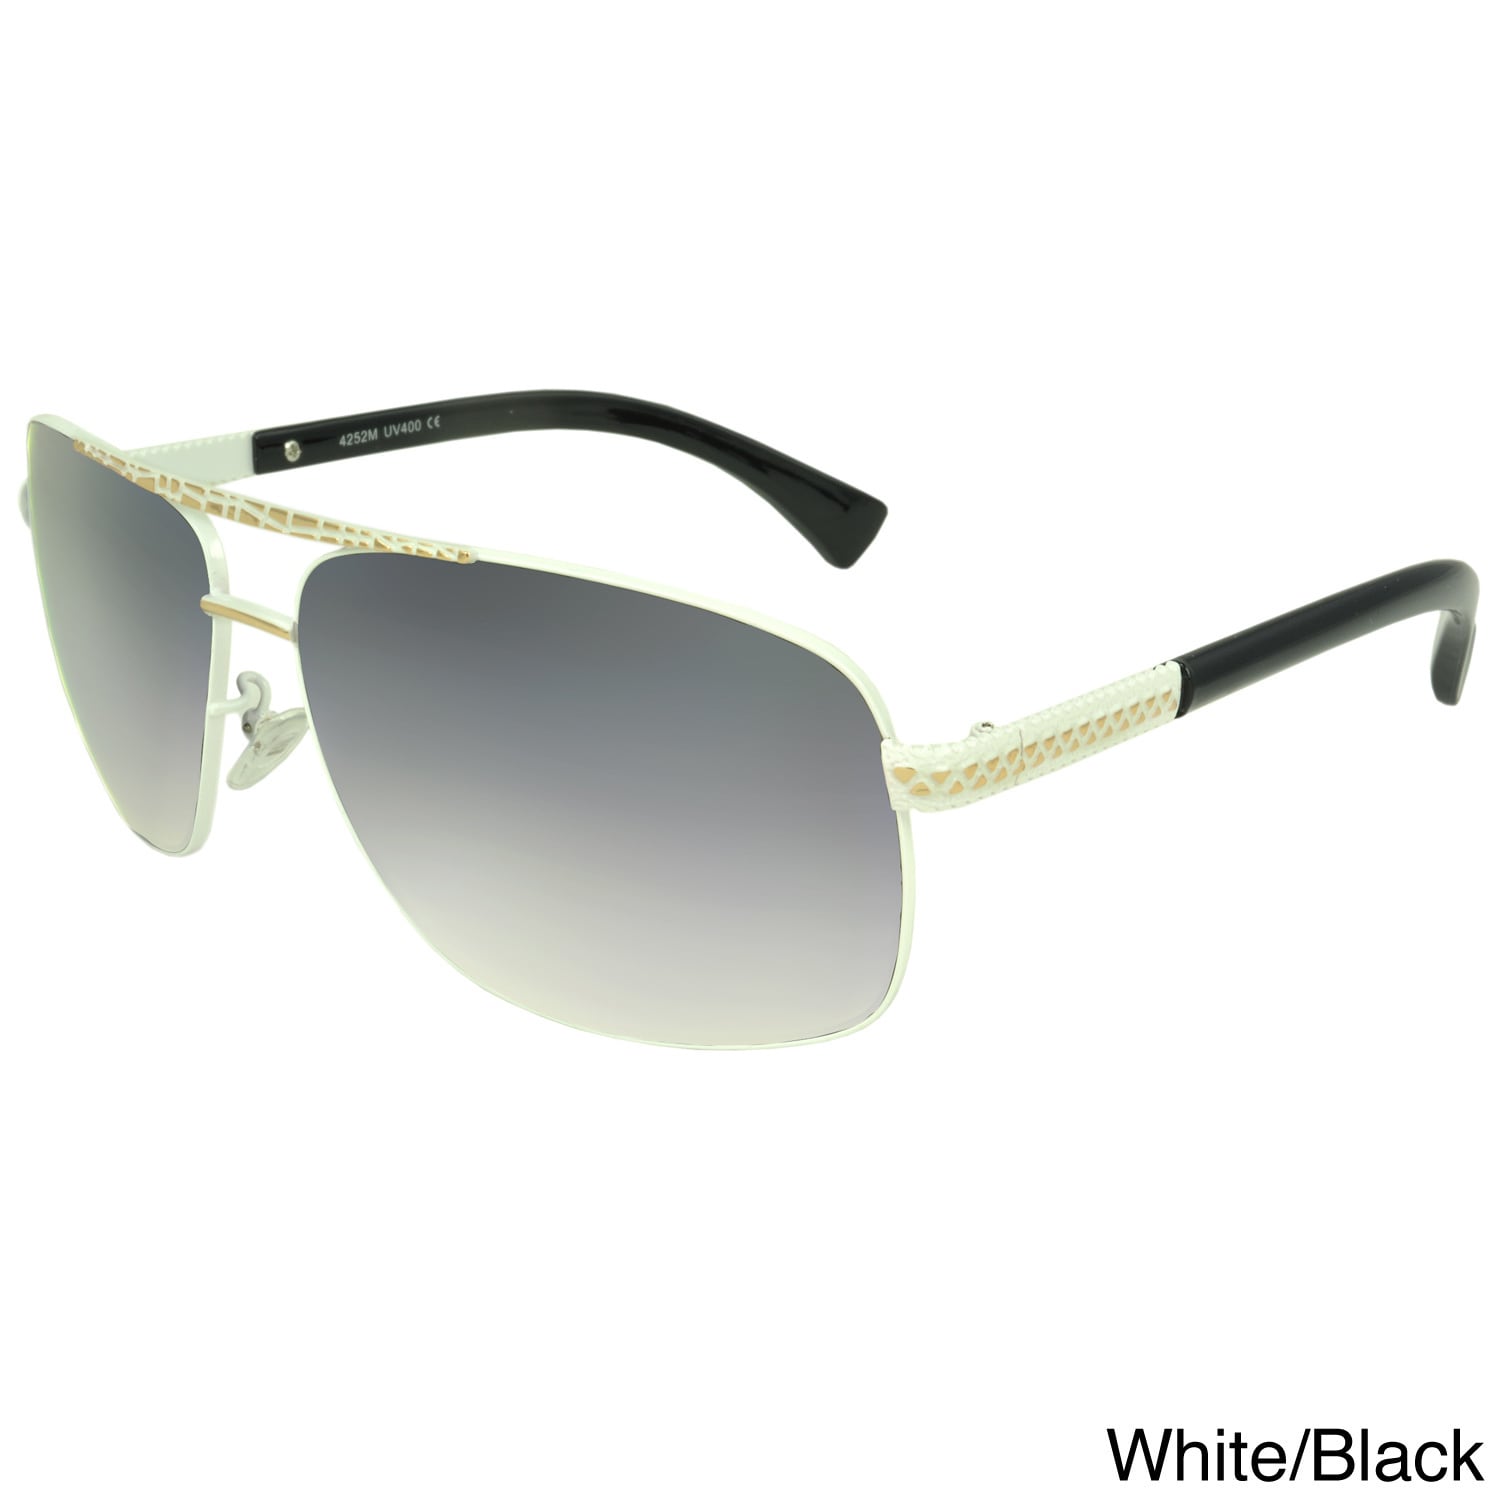 Epic Eyewear Brushwood Rectangle Fashion Sunglasses